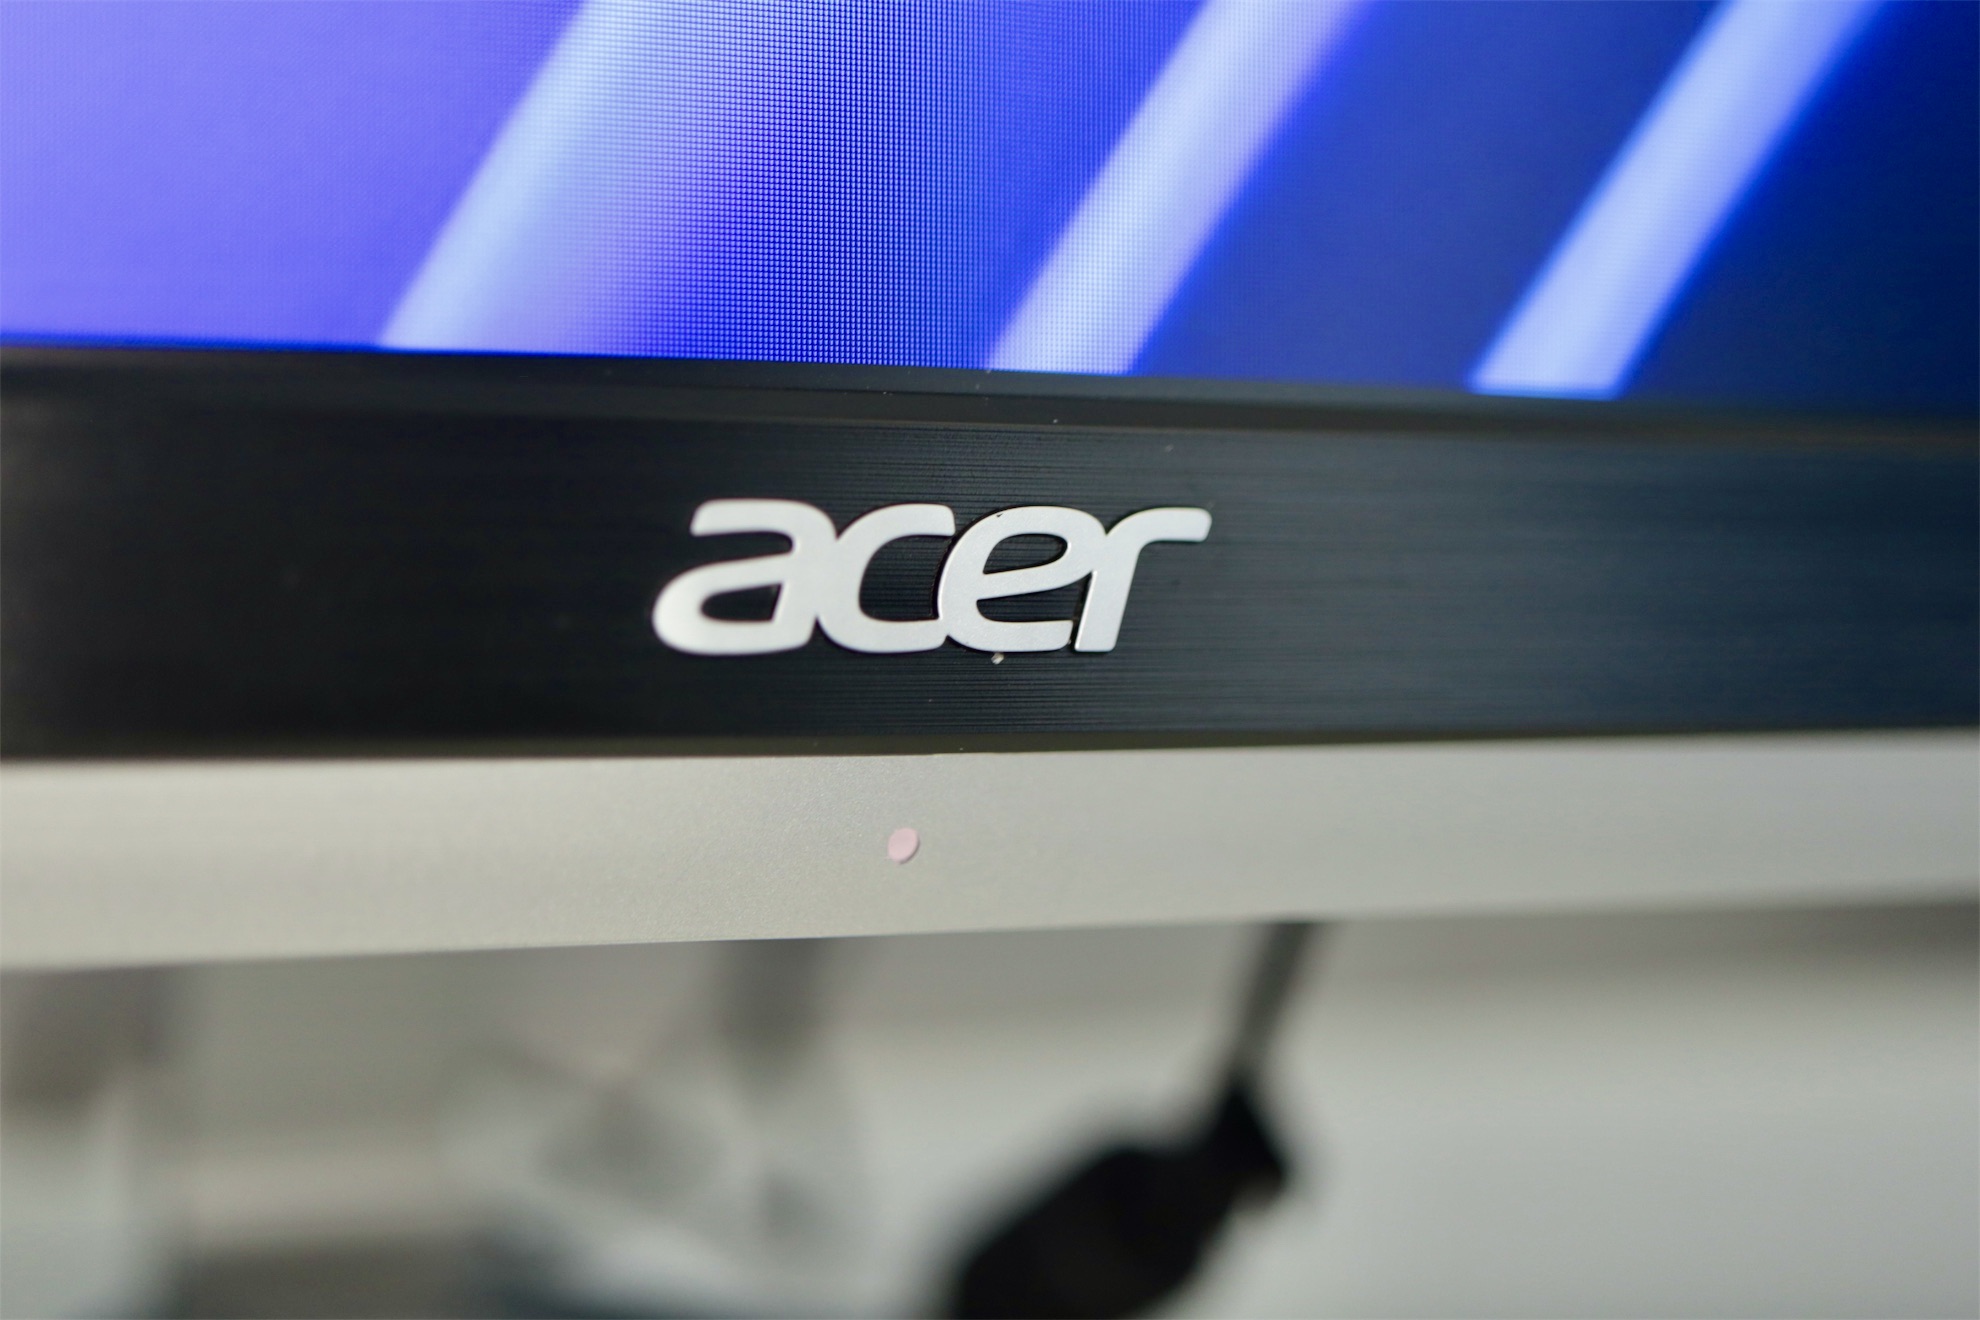 Acer Aspire C24